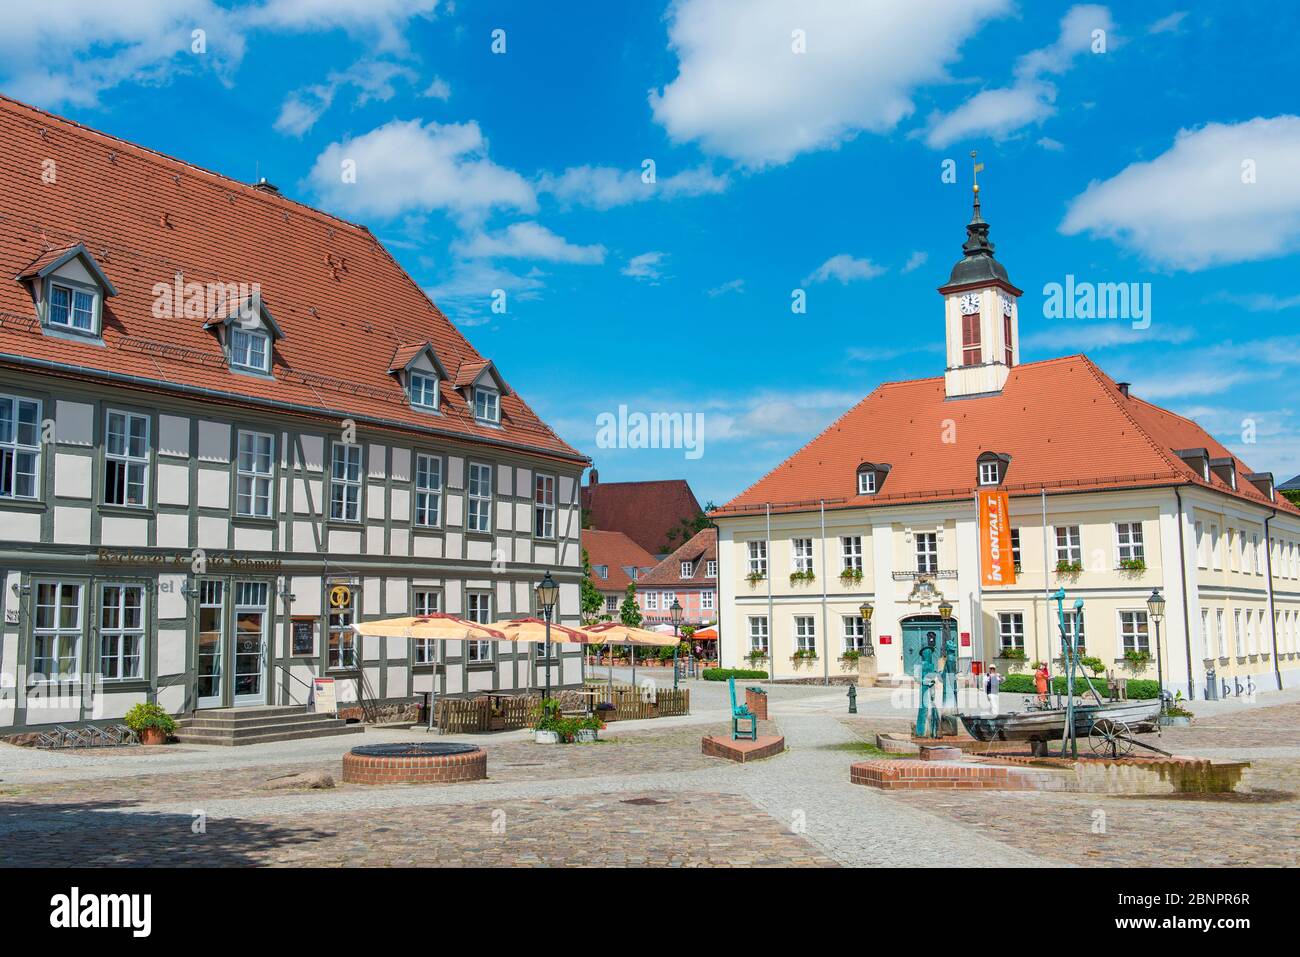 Rathaus am Marktplatz, Angermünde, Uckermark, Brandenburg, Deutschland Stock Photo